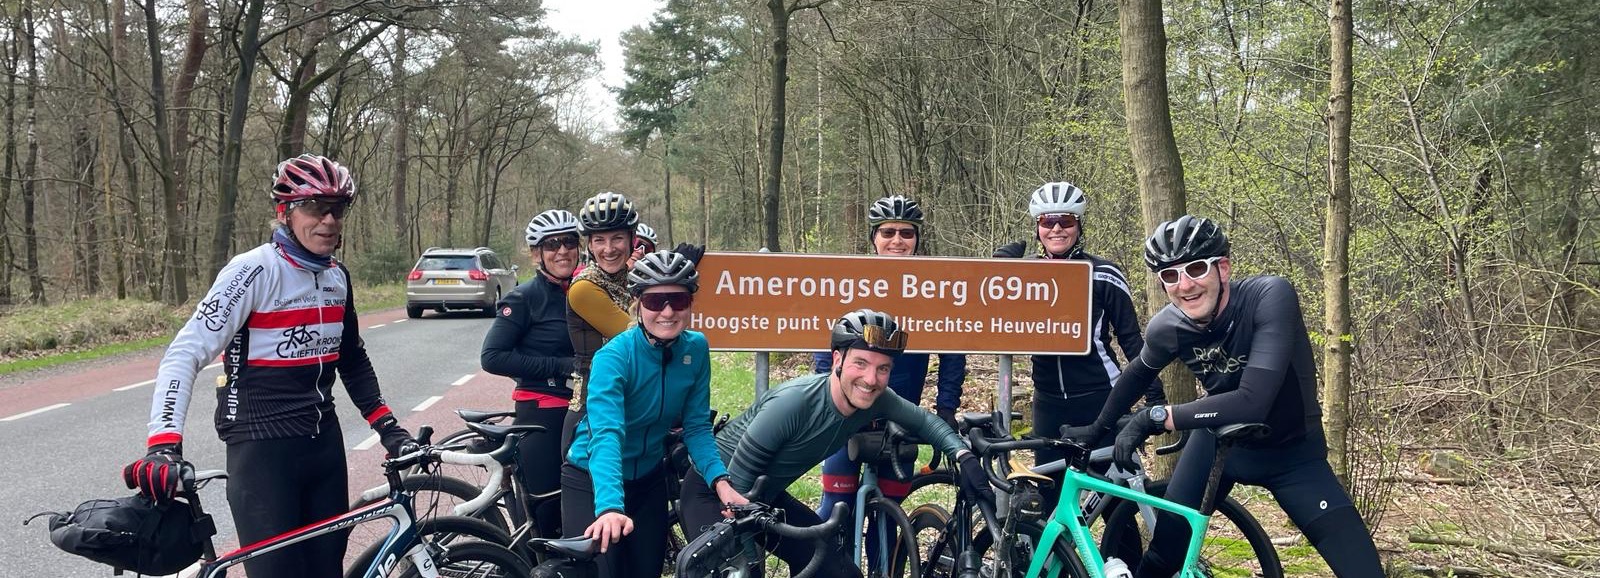 Gidsen en fietsers van Rudi Rides bovenop de Amerongse Berg